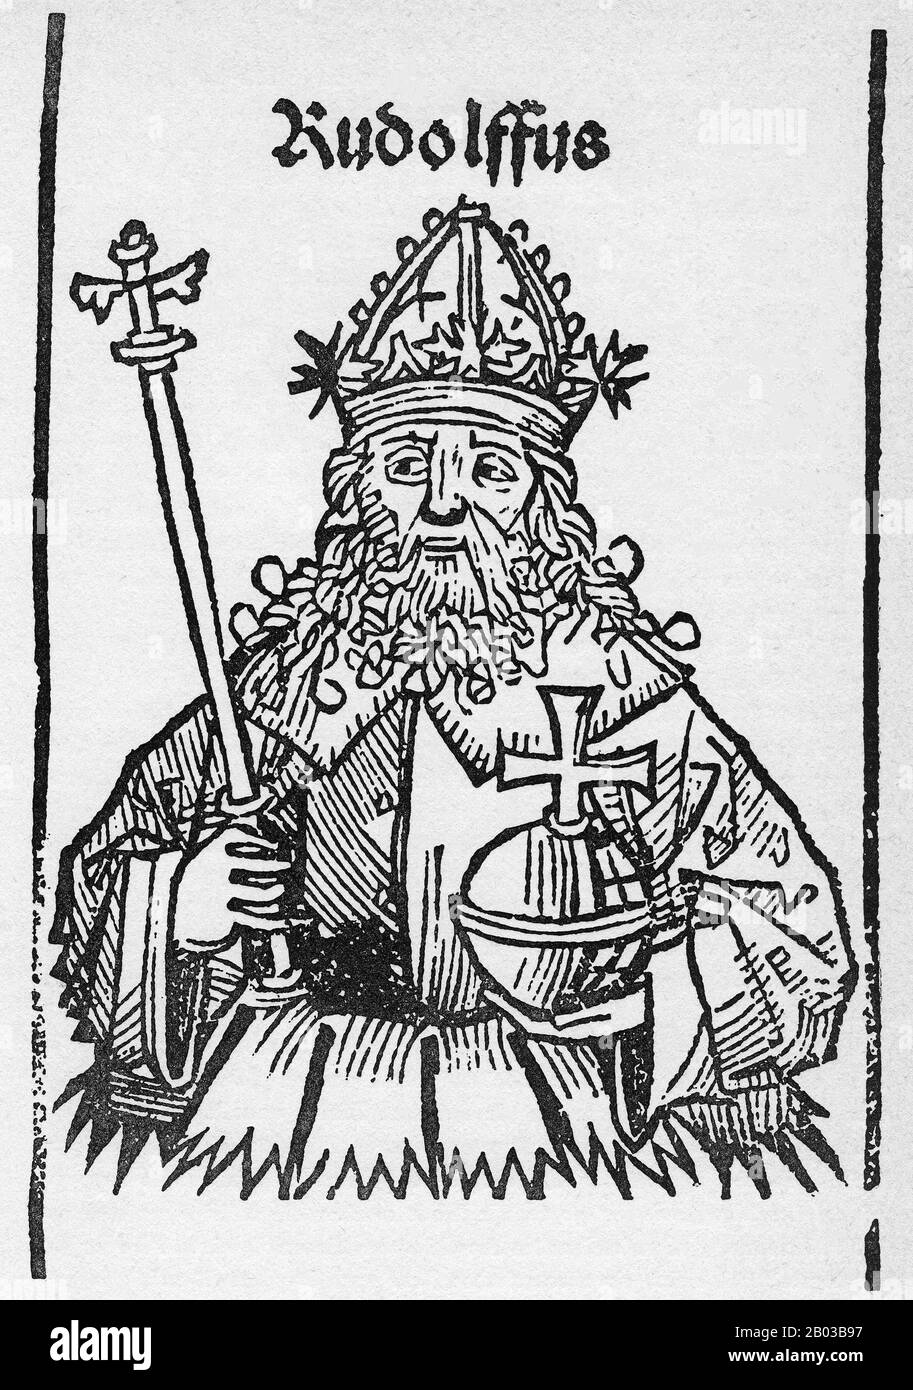 Rudolf I. (1218-1291), auch bekannt als Rudolf von Habsburg, war der Sohn des Graf Albert IV. Von Habsburg und wurde nach dem Tod seines Vaters 1239 Graf. Sein Pate war Kaiser Friedrich II., dem er häufige Gerichtsbesuche abstattete. Rudolf beendete das Große Interregnum, das das Heilige Römische Reich nach dem Tod Friedrichs verhüllt hatte, als er 1273 zum König von Deutschland gewählt wurde. Stockfoto